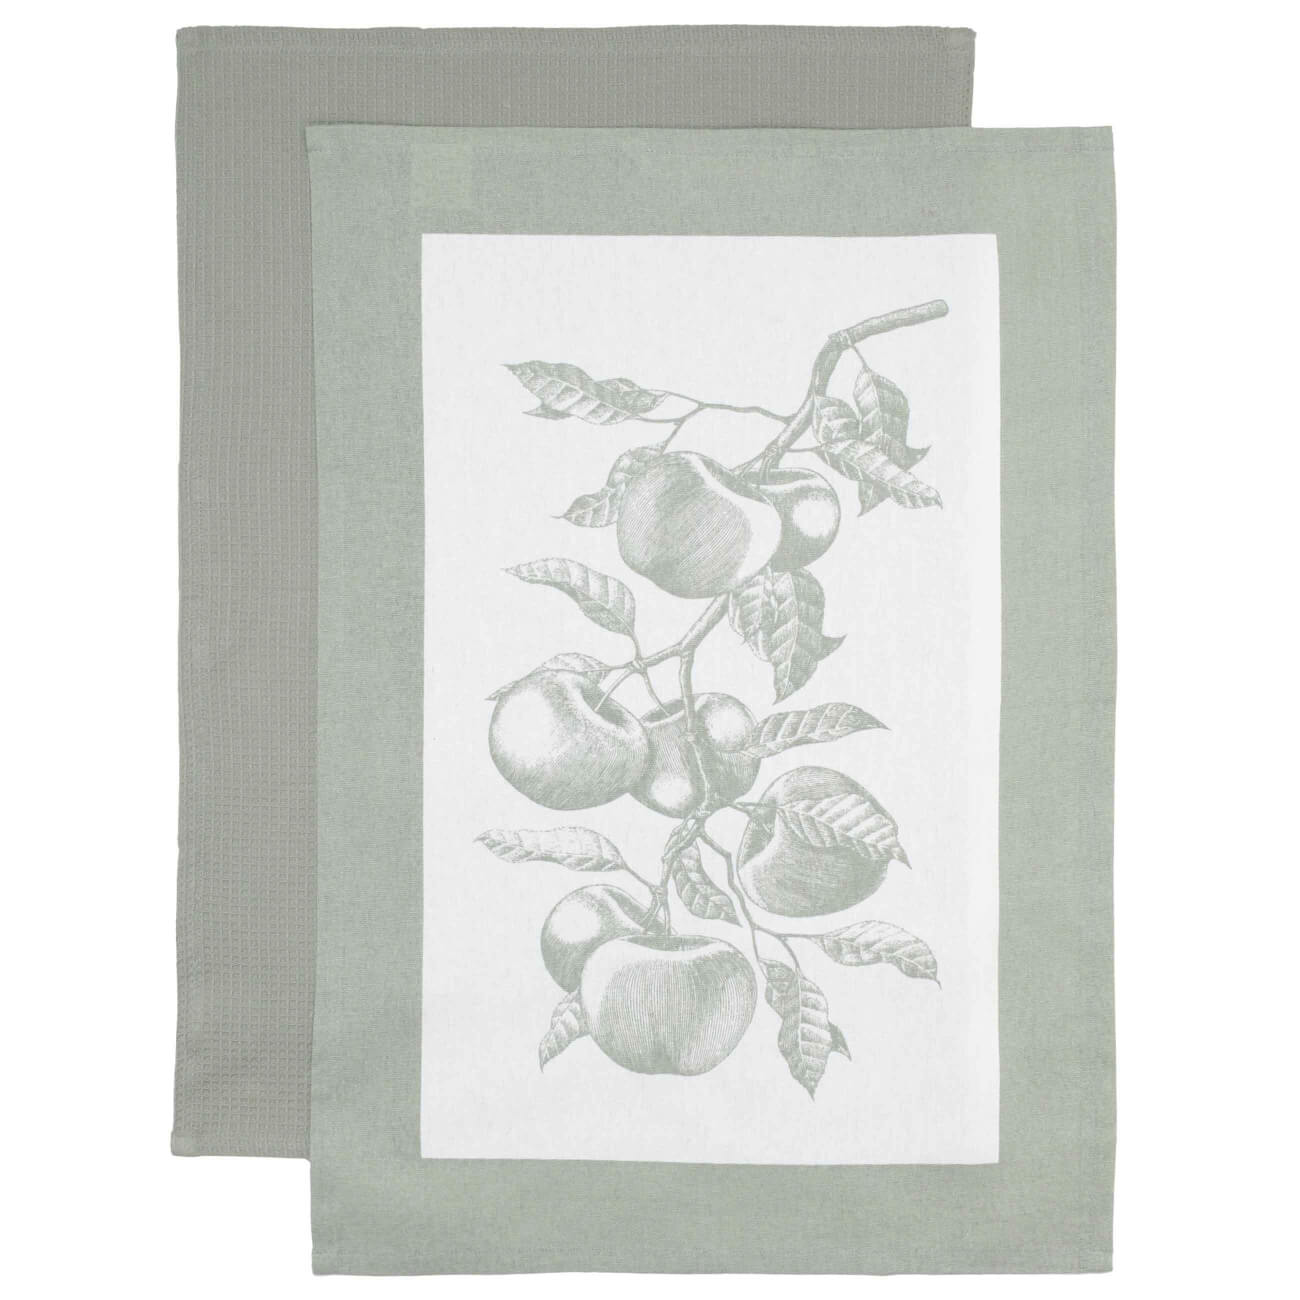 Полотенце кухонное, 40х60 см, 2 шт, хлопок, бежевое/зеленое, Яблочная ветвь, Apple garden набор для полотенце уголок рукавица